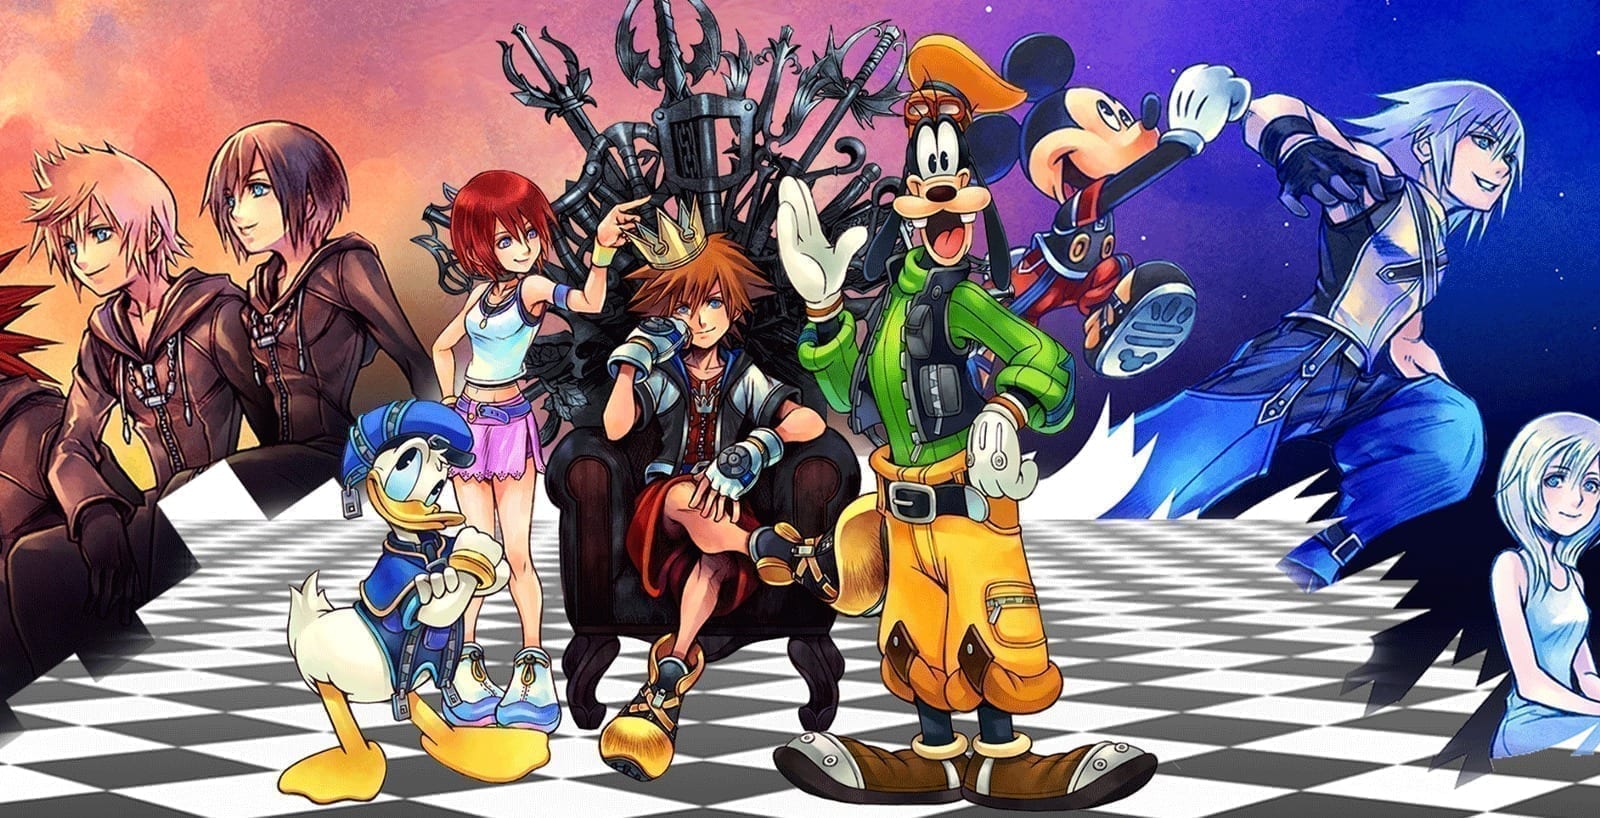 [Recenzja] Kingdom Hearts HD 1.5 + 2.5 Remix, tak zaczęła się legenda – część I